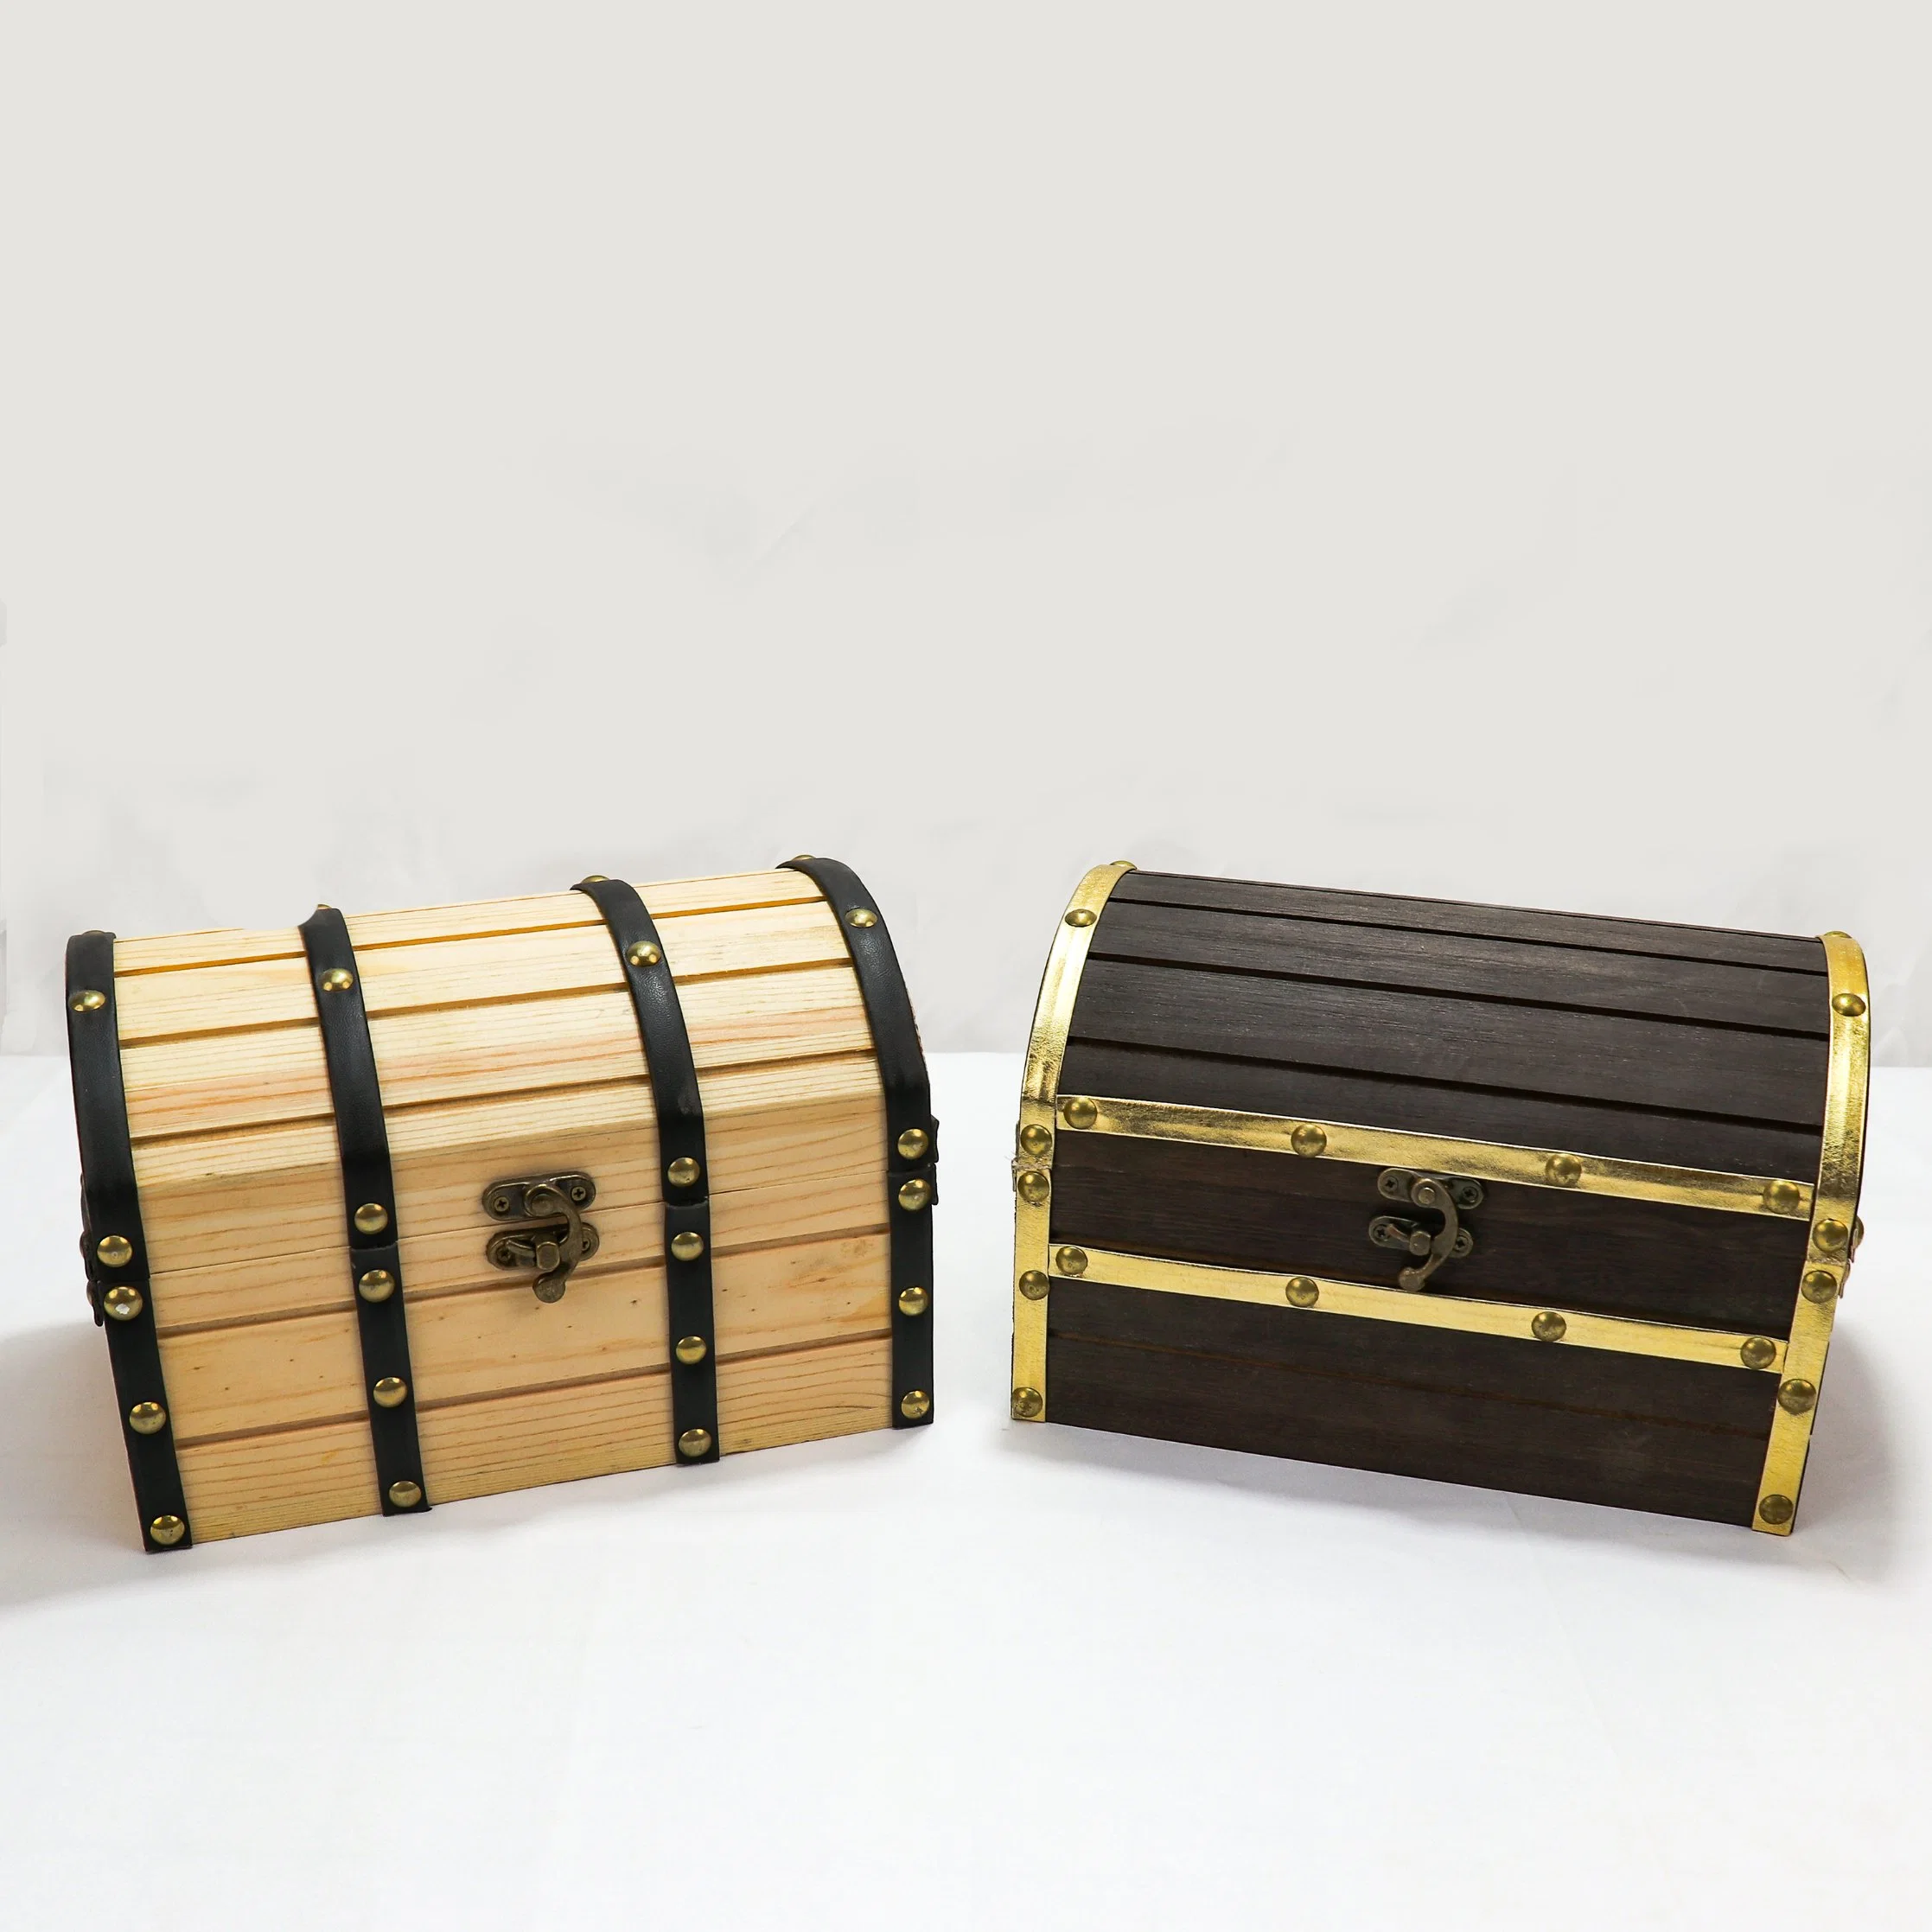 صندوق مجوهرات خشبي من الخشب والجلد مع صندوق مجوهرات من خشب الكنز والجلد المزلاج